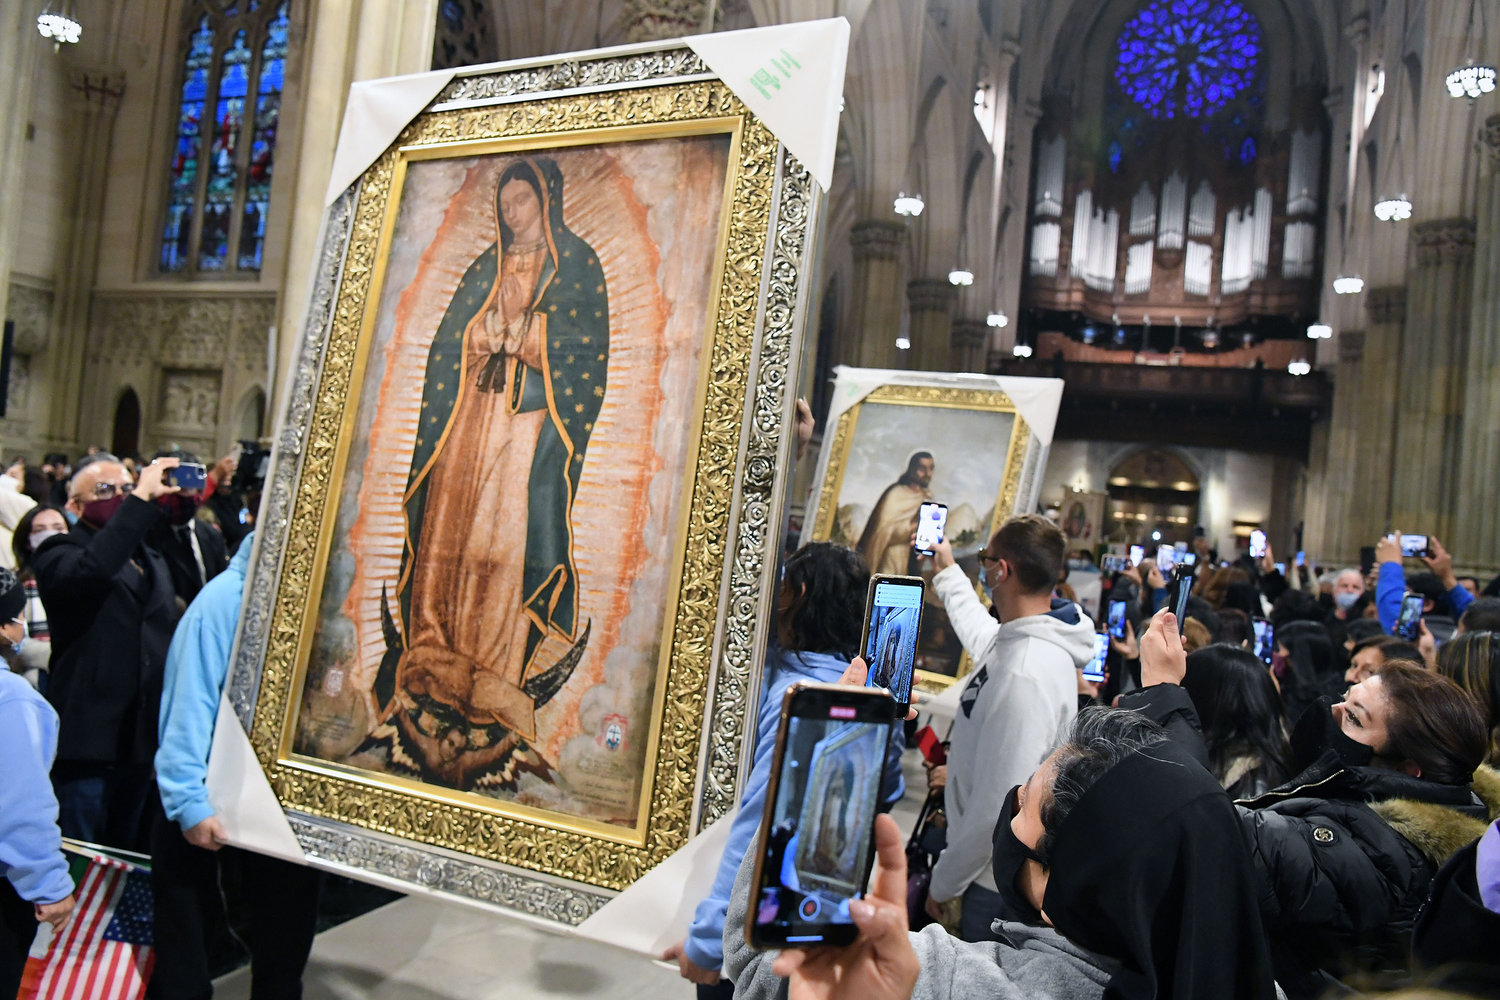 El obispo Castro también fue el celebrante principal. Un retrato grande de Nuestra Señora de Guadalupe y uno de San Juan Diego, eran parte de la procesión de entrada. Los retratos fueron regalos para la Arquidiócesis de Nueva York de parte de la Conferencia Episcopal de México.